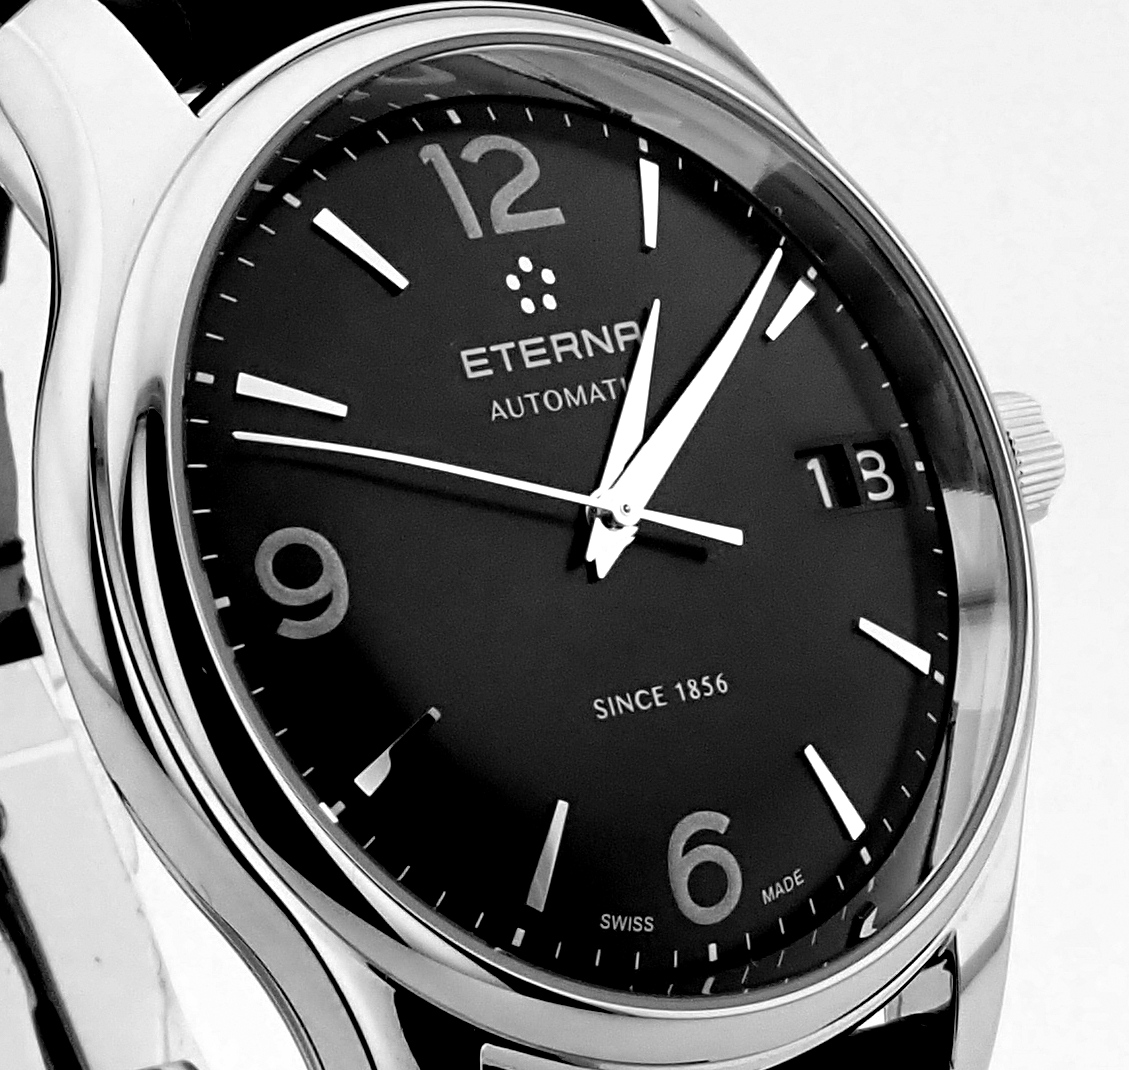 Eterna / Vaughan Big Date (Brand New) - Gentlemen's Steel Wrist Watch - Image 18 of 18